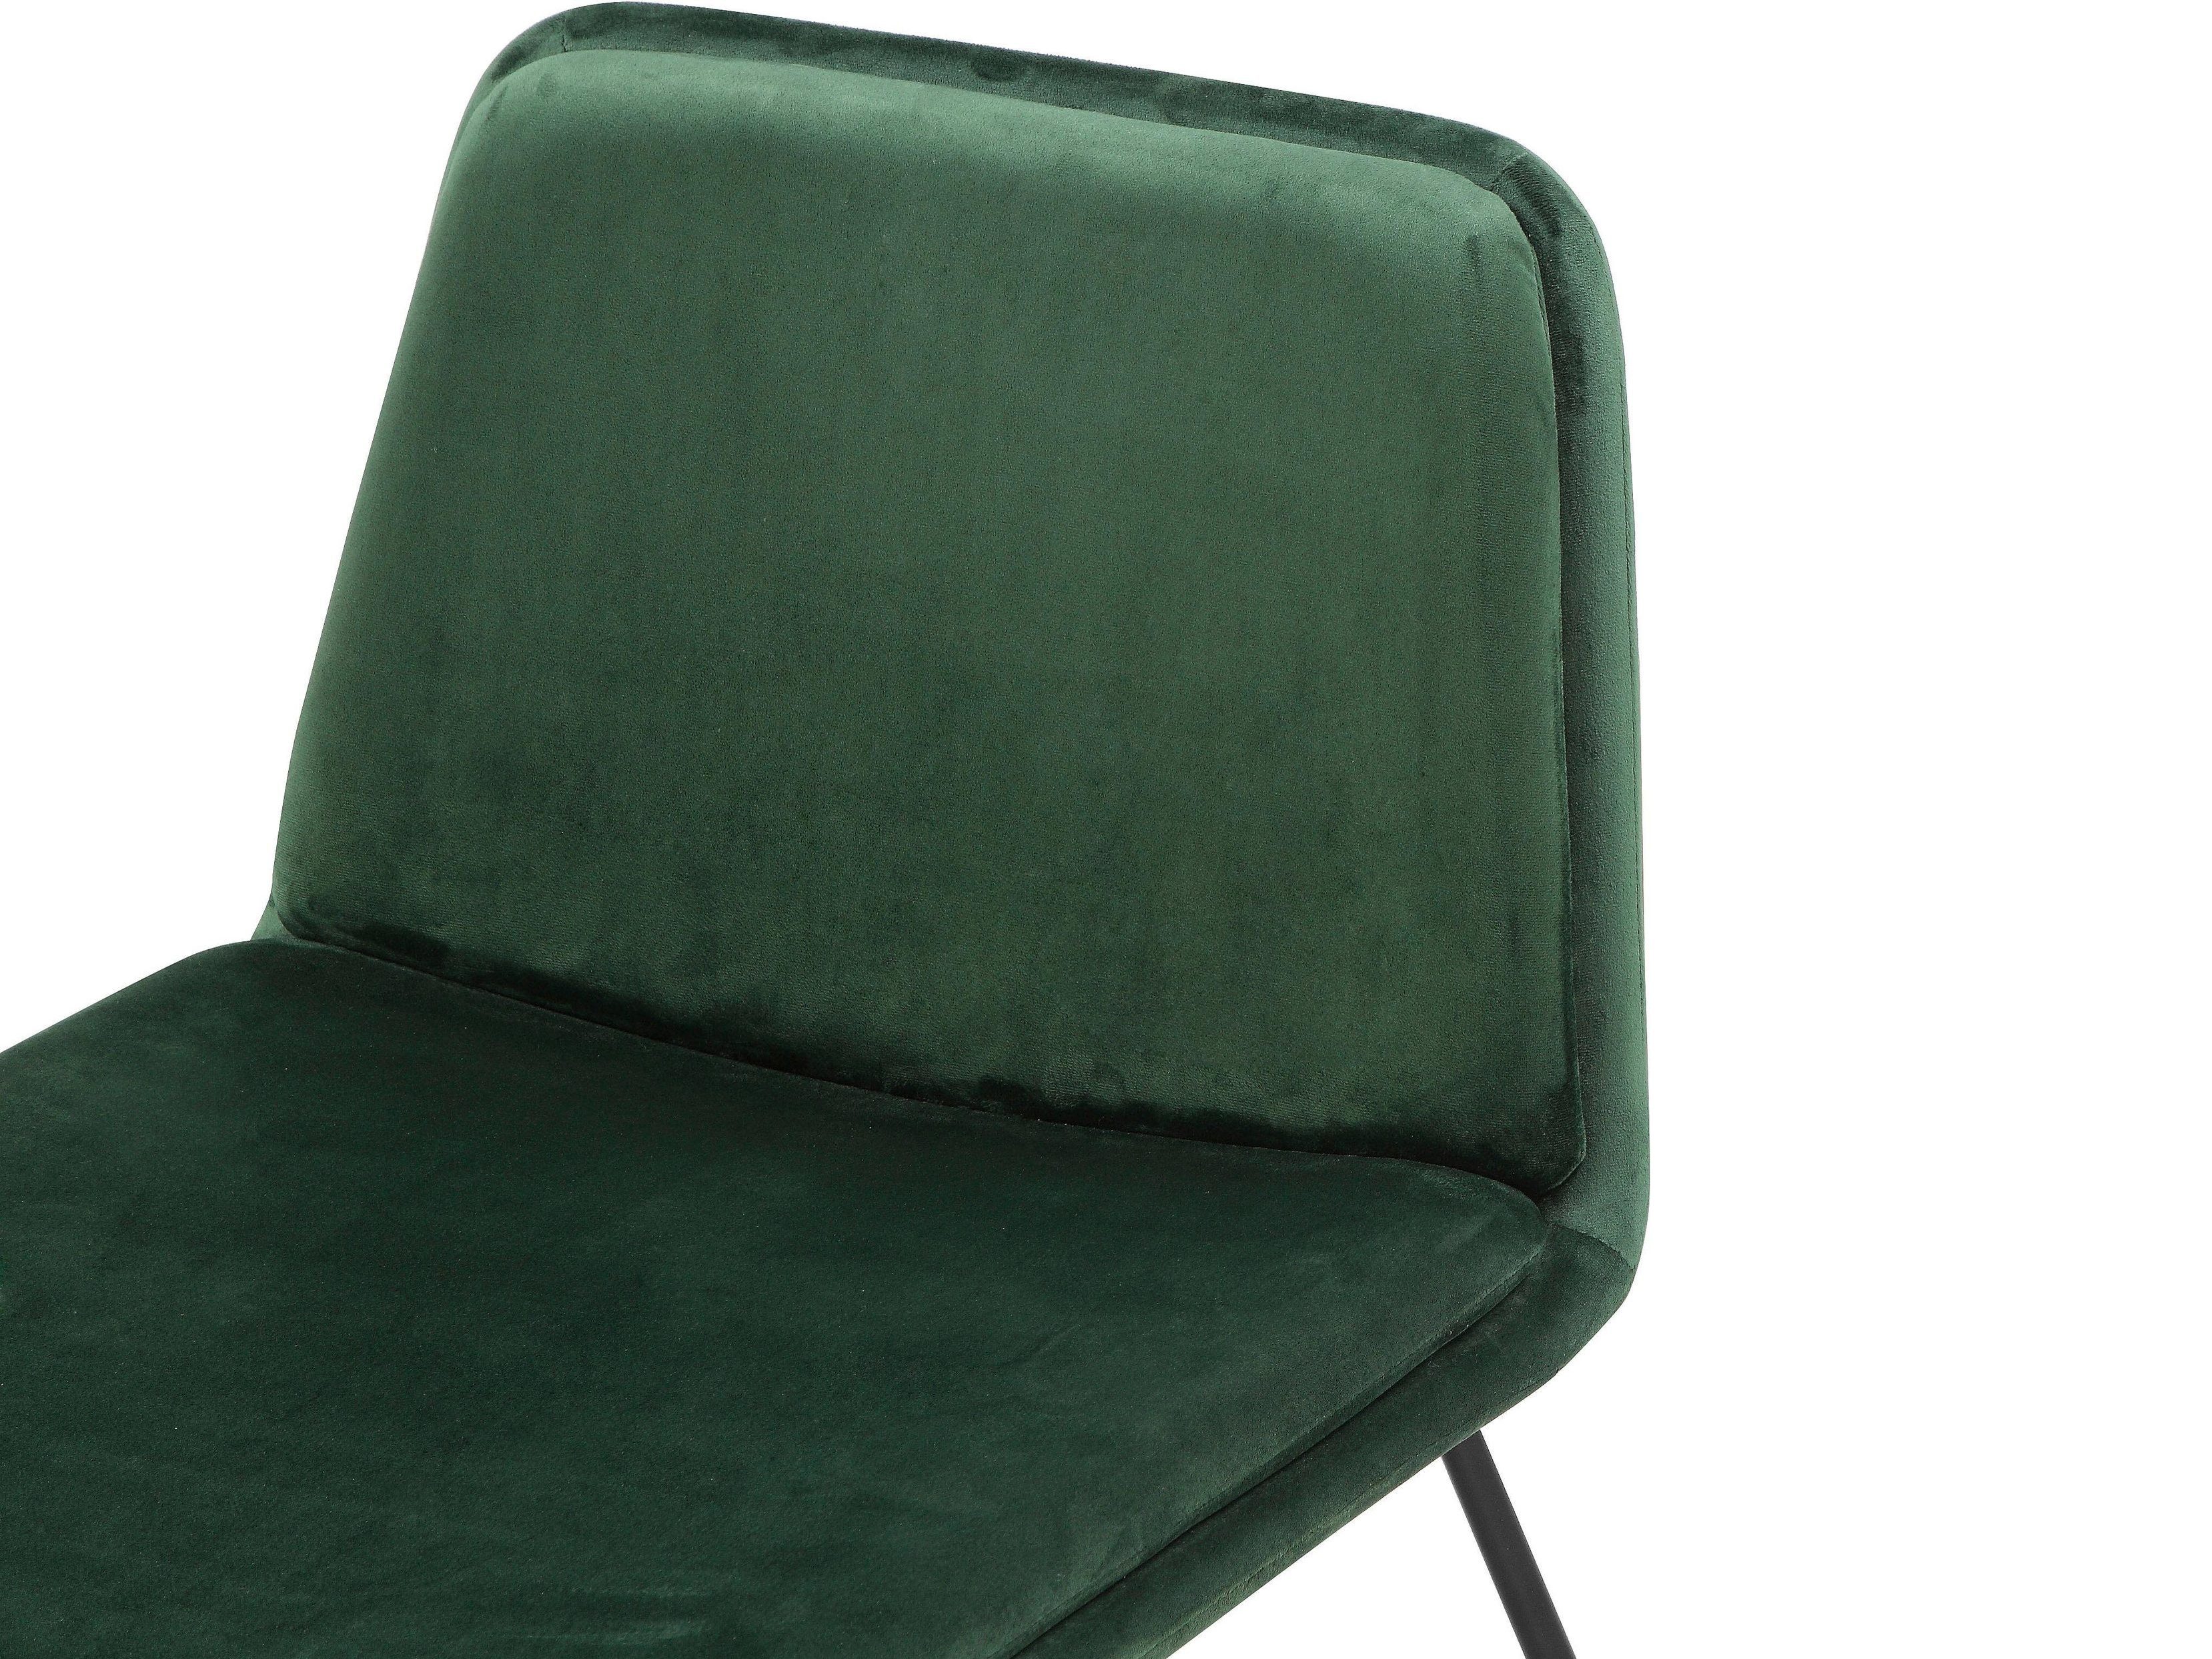 Heino | Stück) Stuhl loft24 (1 grün chrome